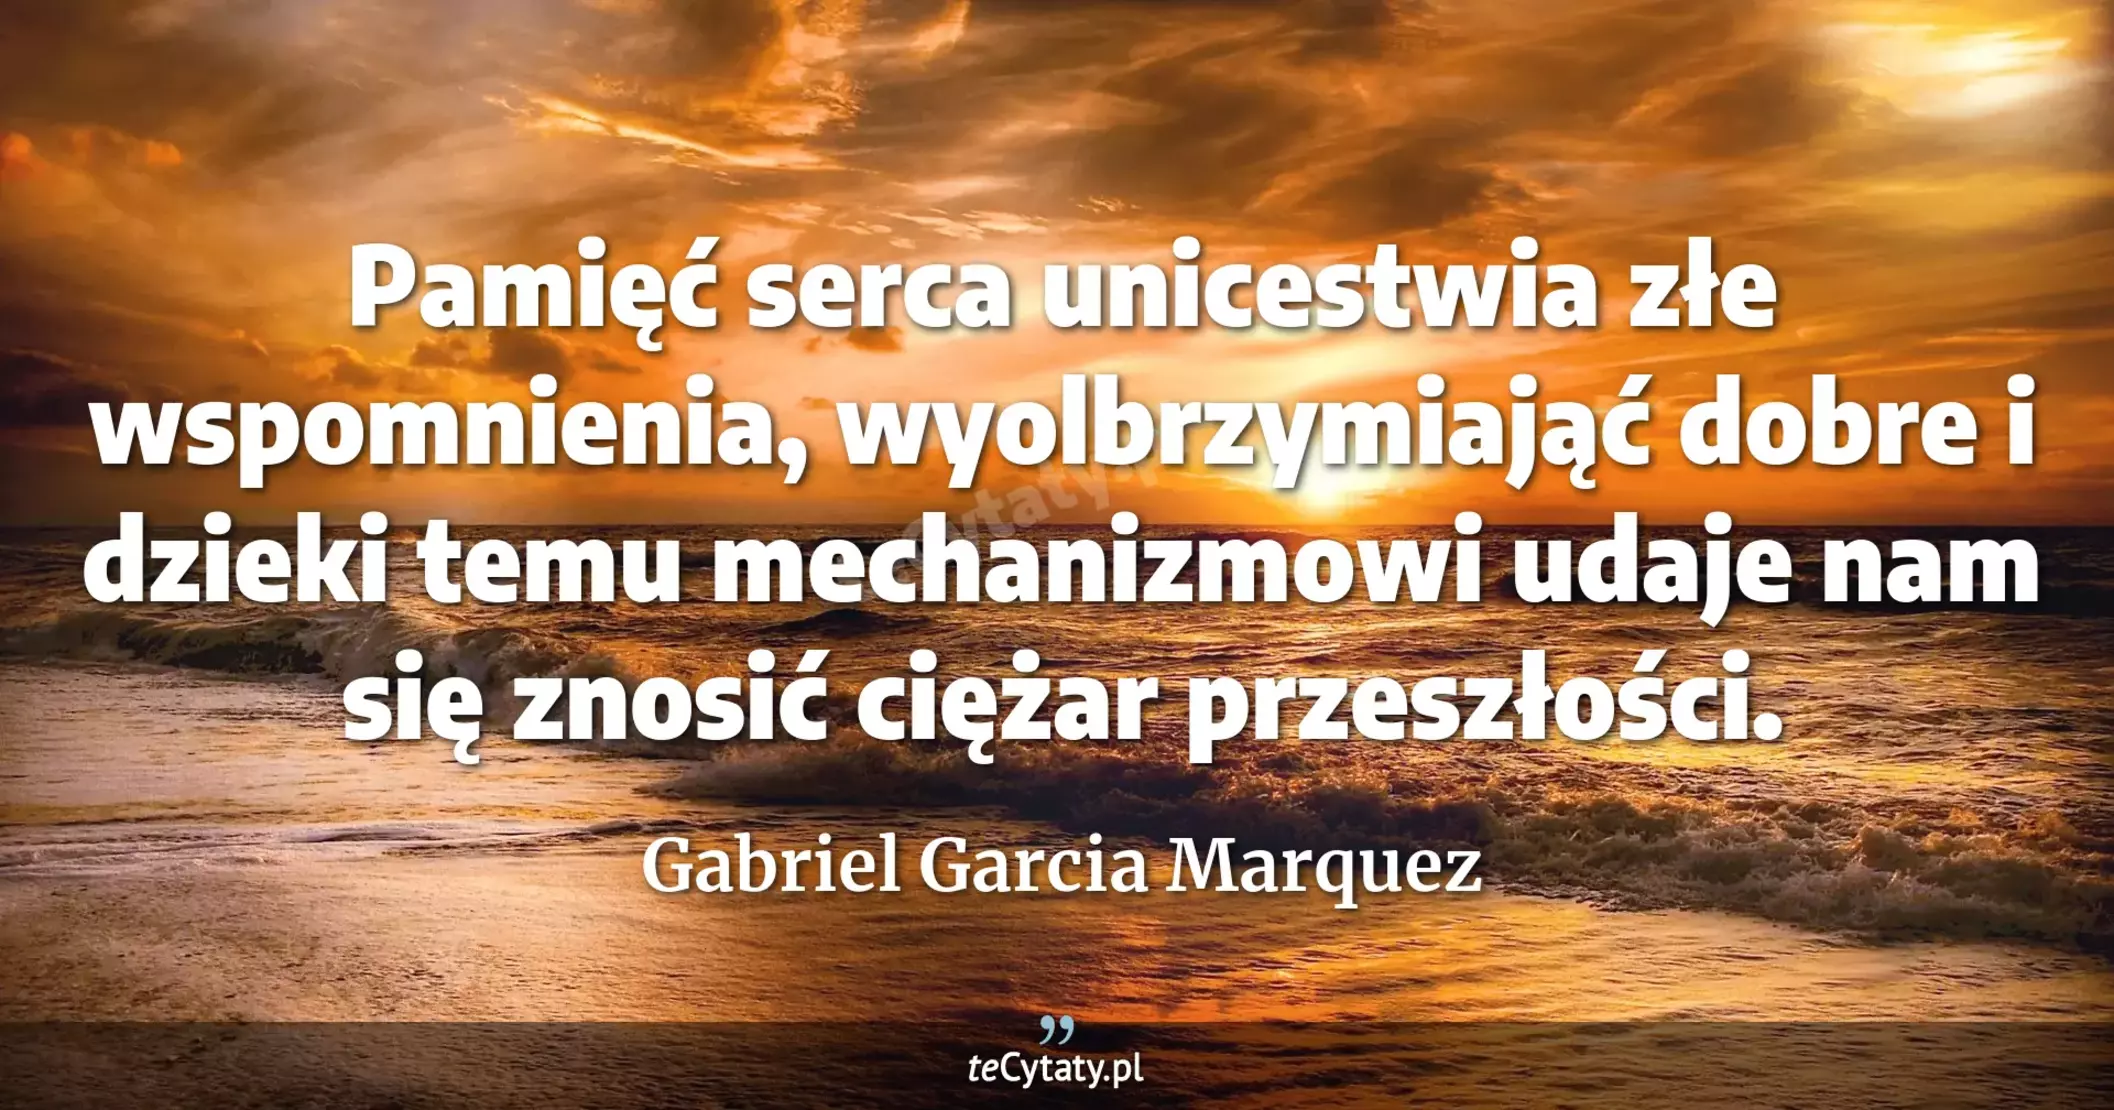 Pamięć serca unicestwia złe wspomnienia, wyolbrzymiająć dobre i dzieki temu mechanizmowi udaje nam się znosić ciężar przeszłości. - Gabriel Garcia Marquez